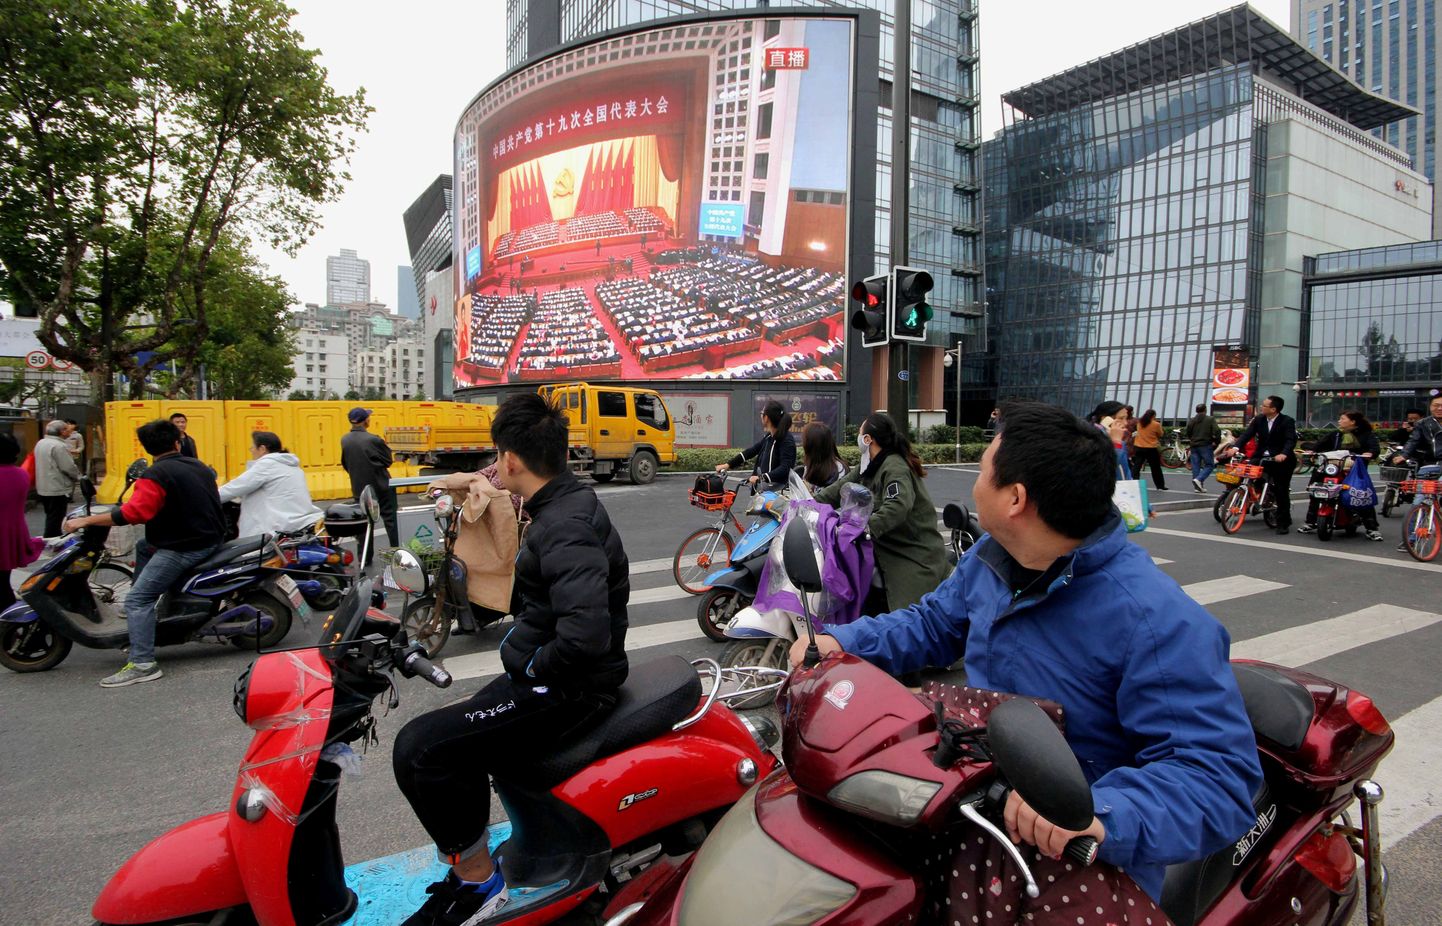 Hiinlased tänavatele paigutatud suurtelt ekraanidelt presidendi kõnet jälgimas.